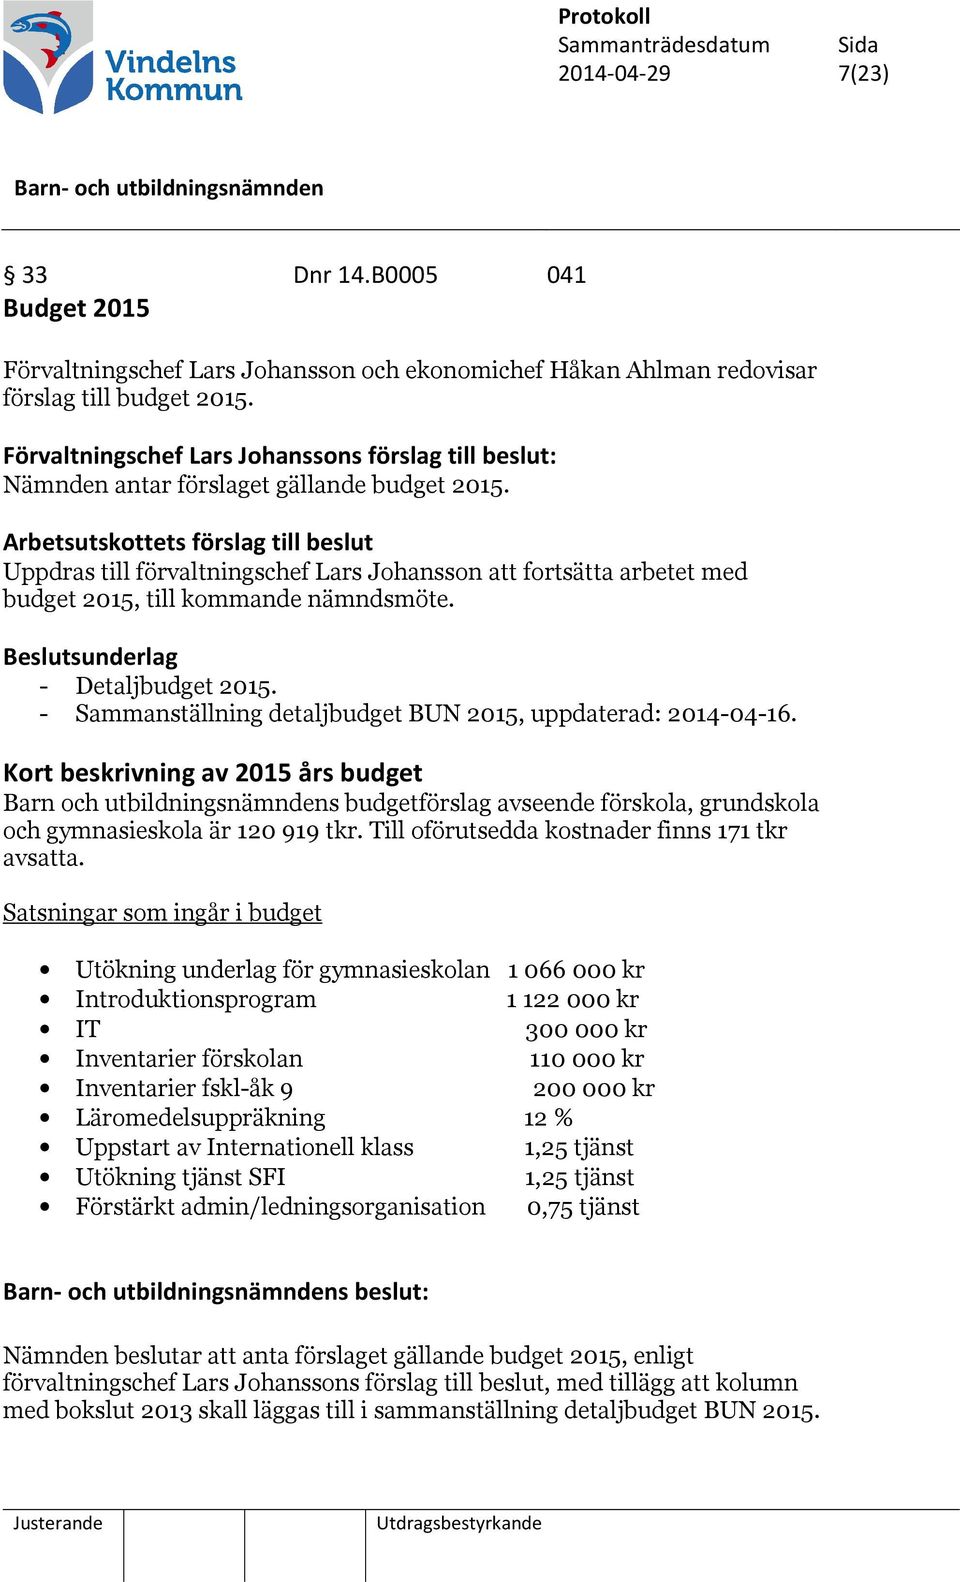 Arbetsutskottets förslag till beslut Uppdras till förvaltningschef Lars Johansson att fortsätta arbetet med budget 2015, till kommande nämndsmöte. - Detaljbudget 2015.